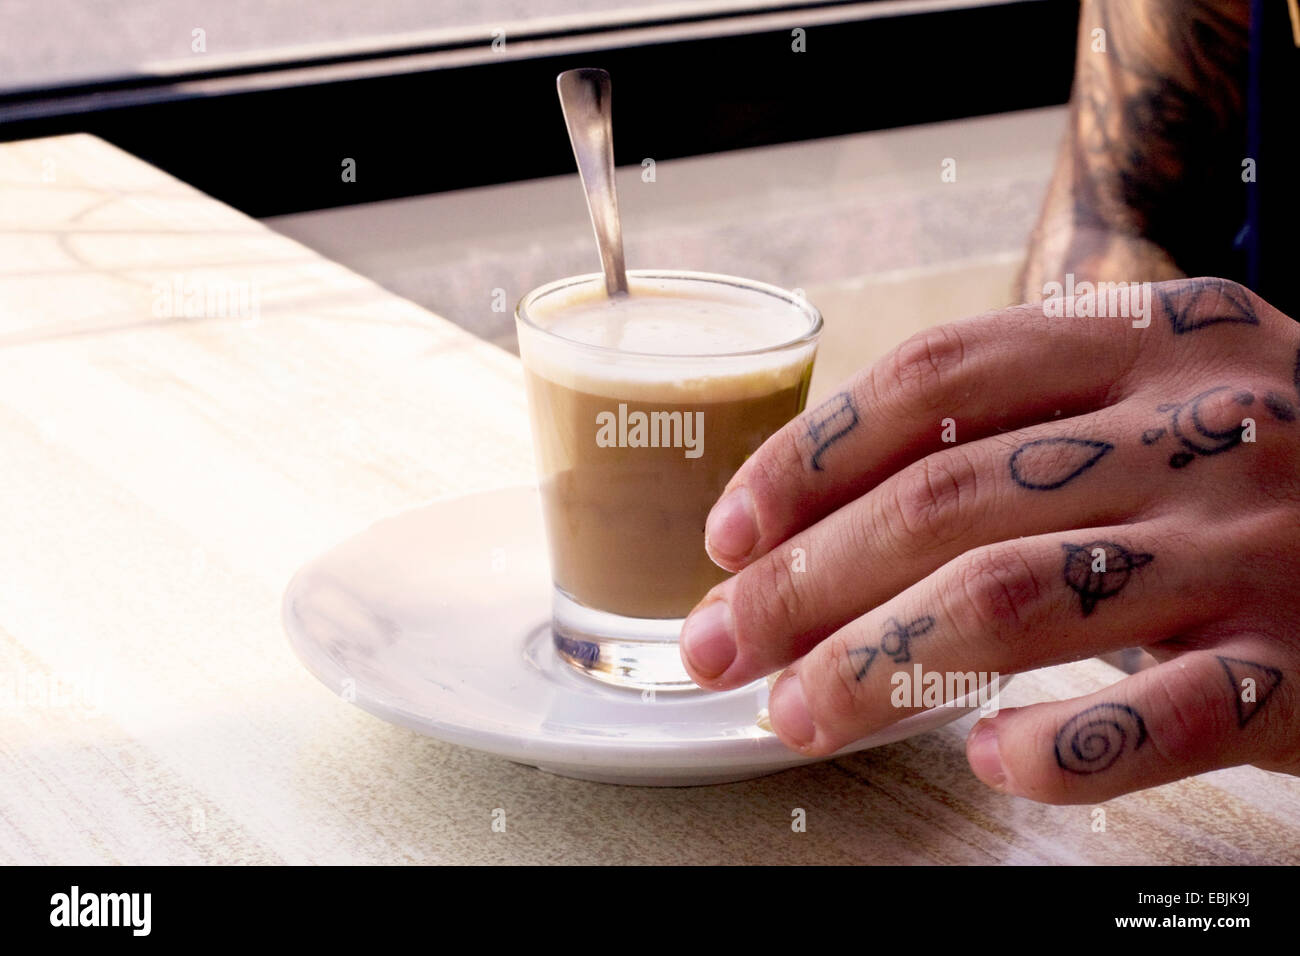 Tätowierte Hand des jungen Mannes und Kaffee Shotglas am Café-Tisch Stockfoto